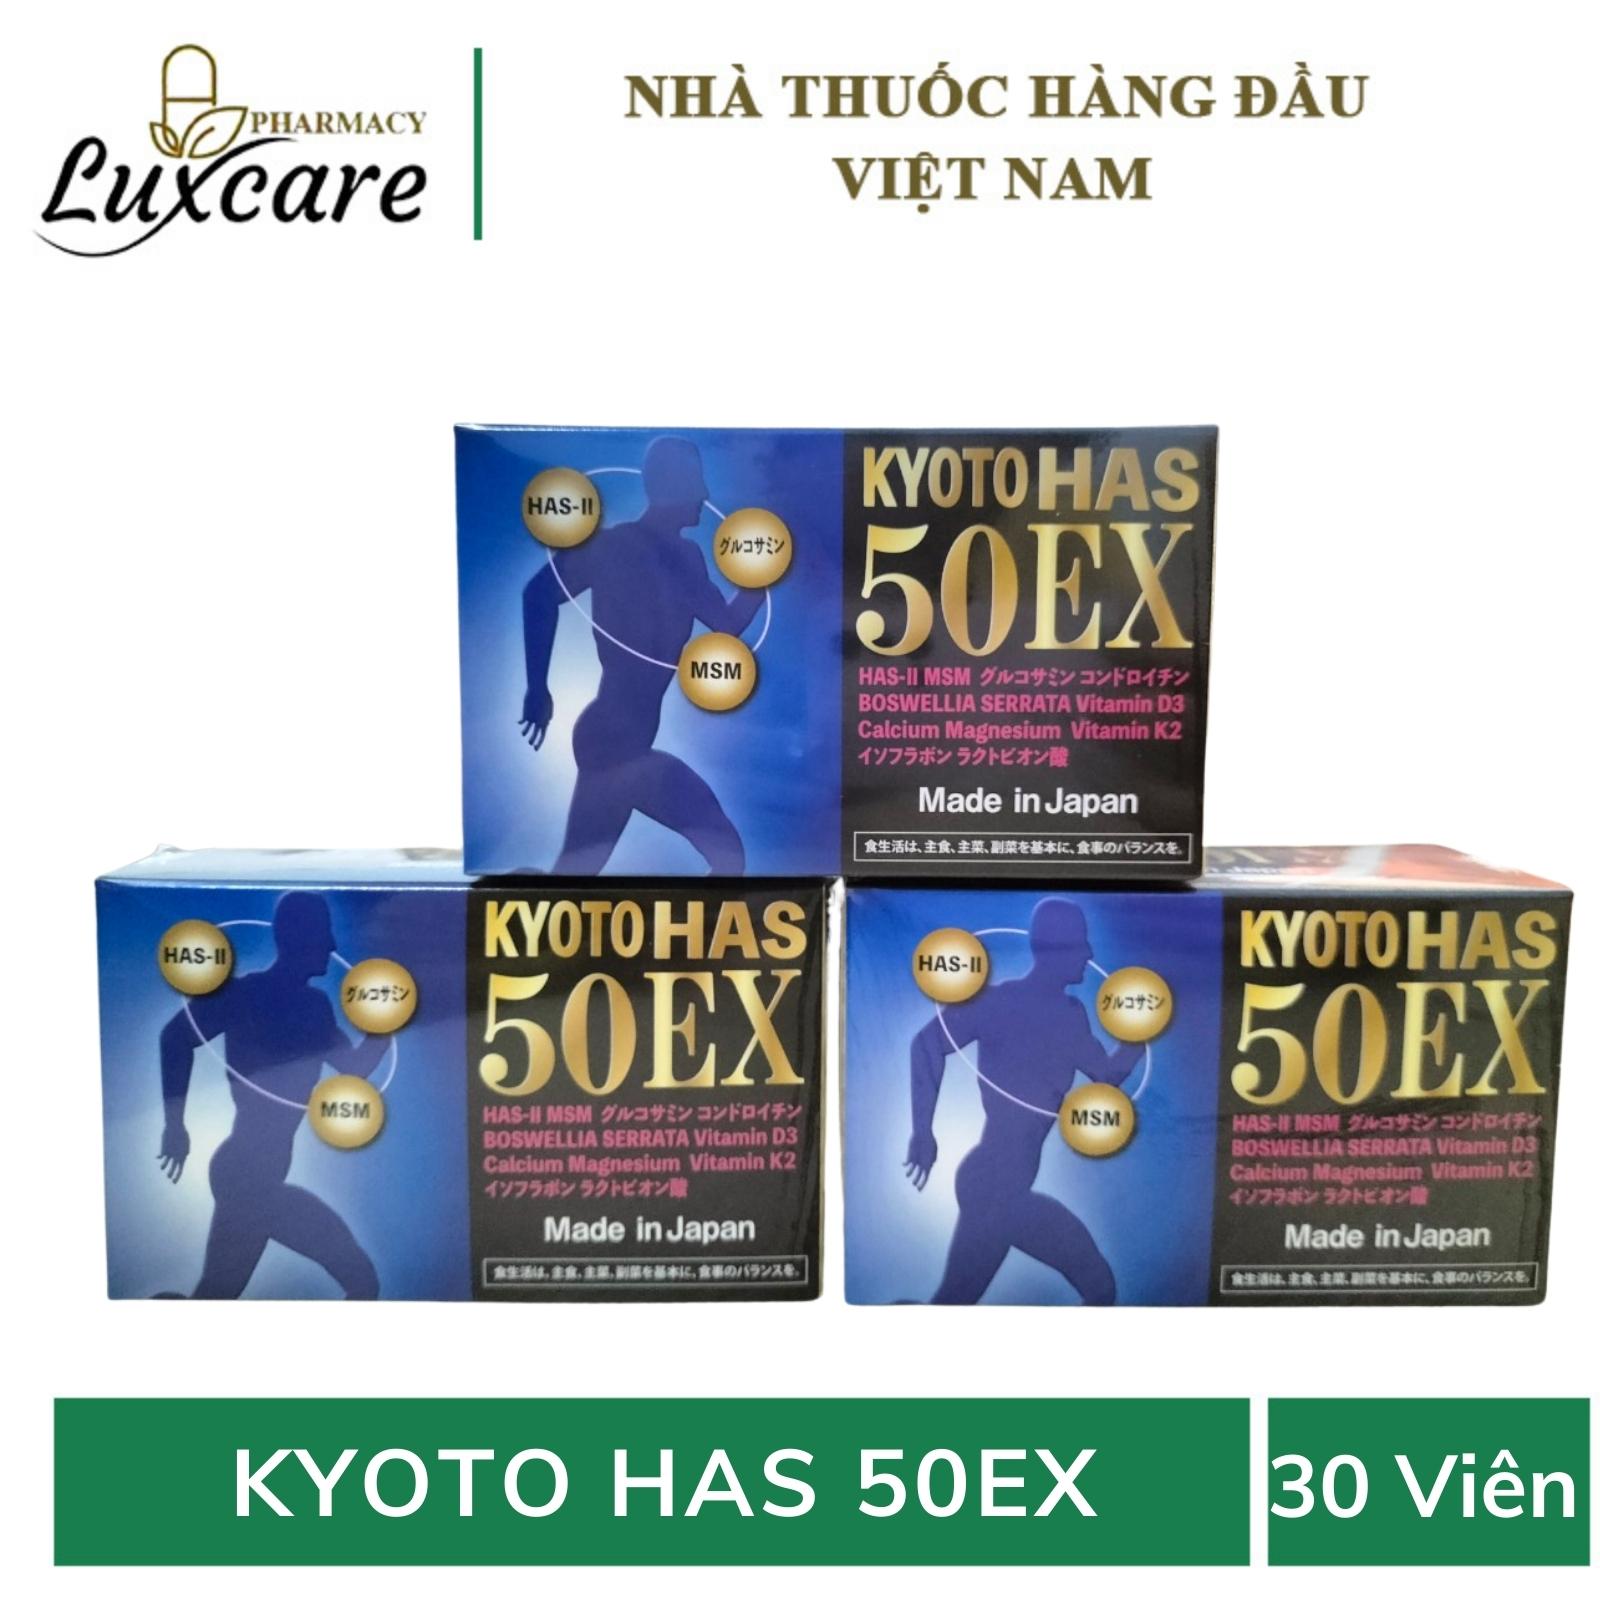 Kyoto HAS 50EX - Cải thiện chất lượng cuộc sống cho người thoát vị đĩa đệm